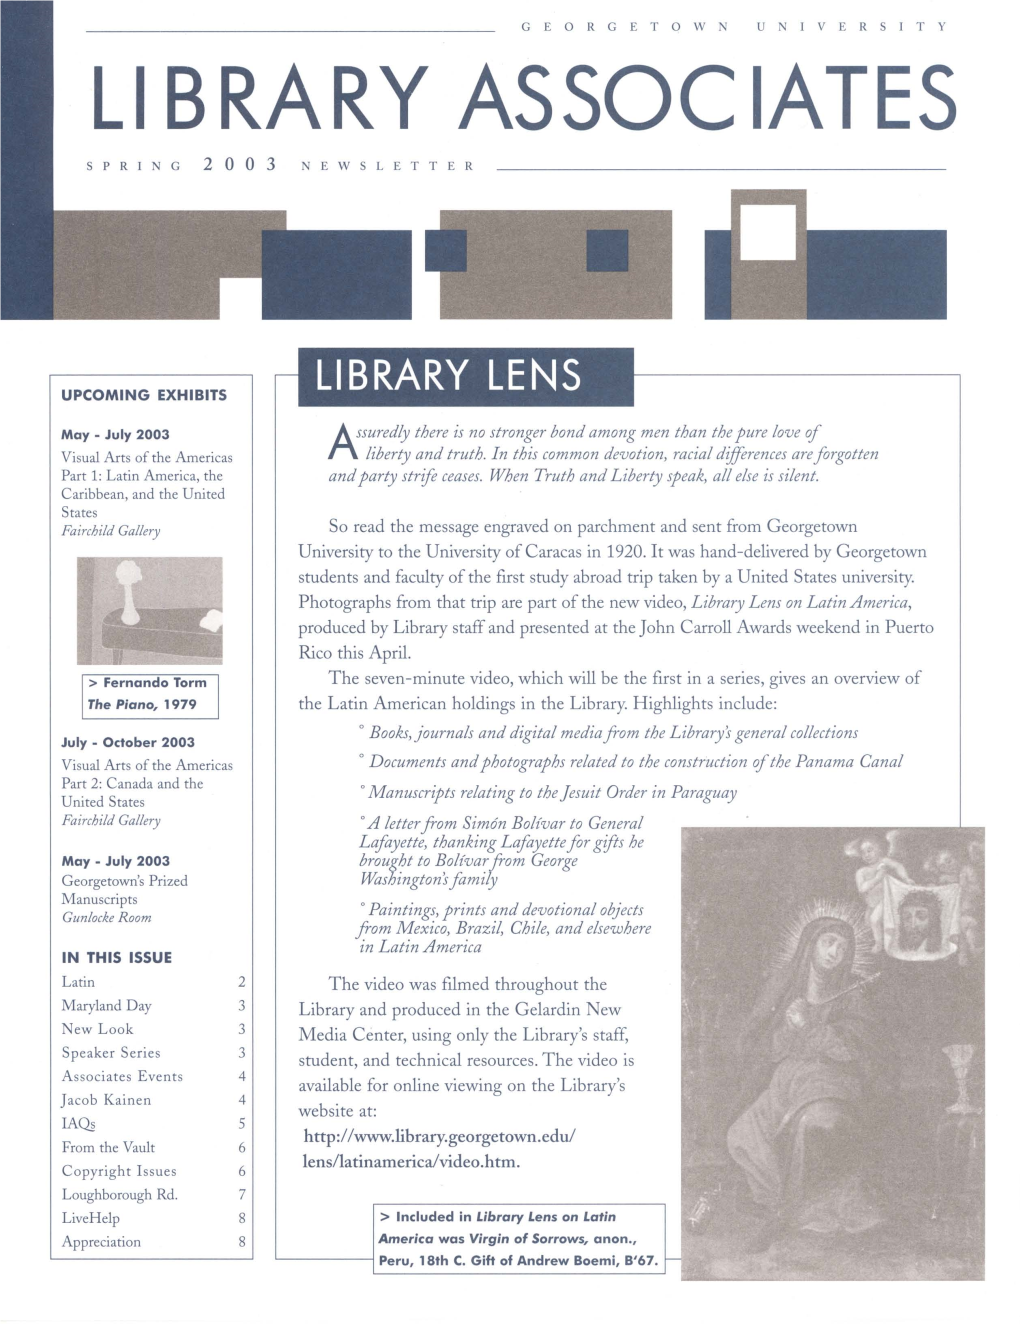 Library Associates Spring 2003 Newsletter